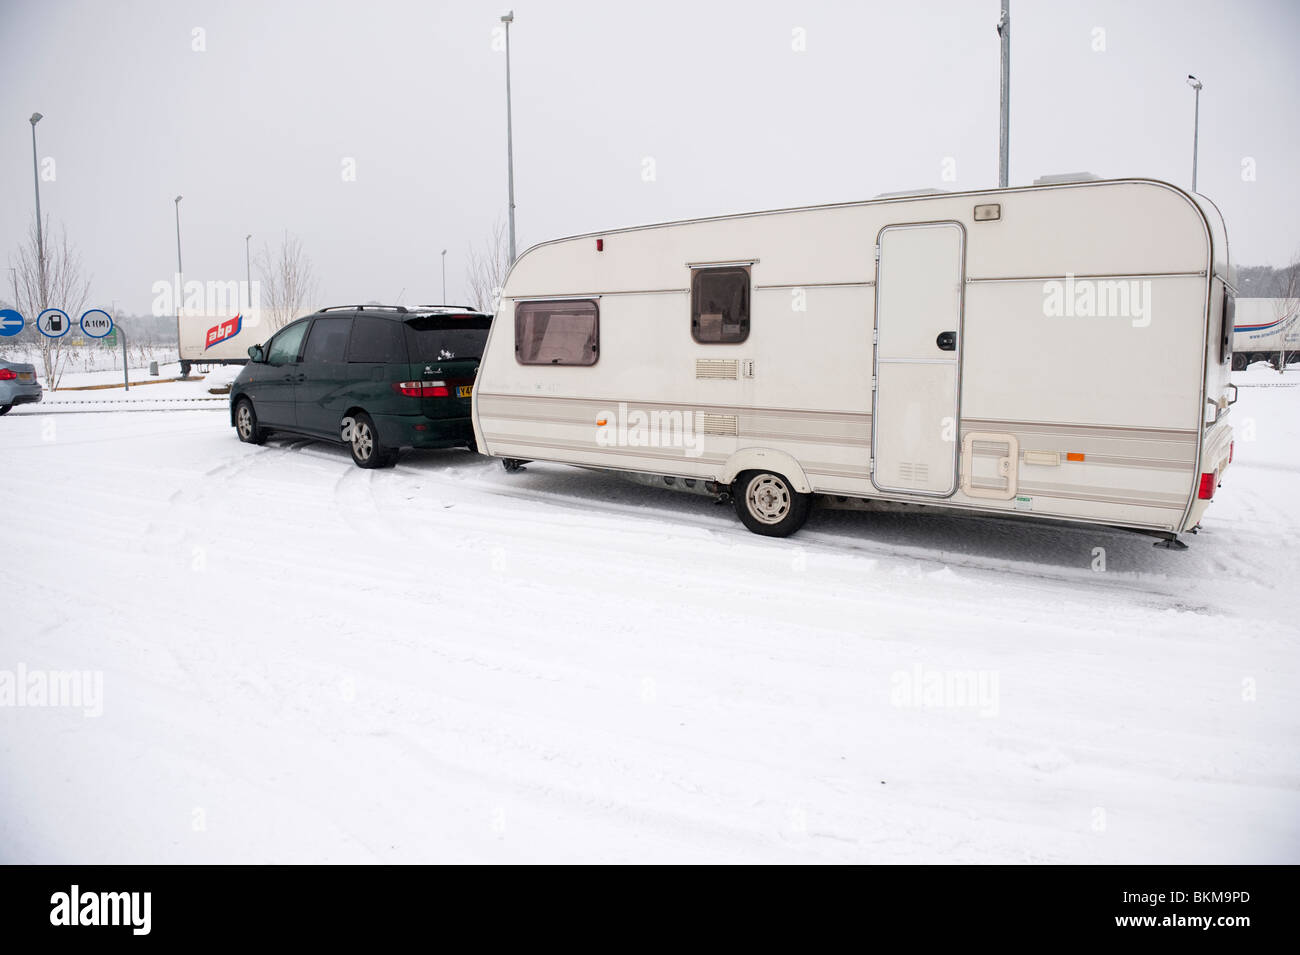 Caravane coincé dans la neige et la glace en hiver Banque D'Images